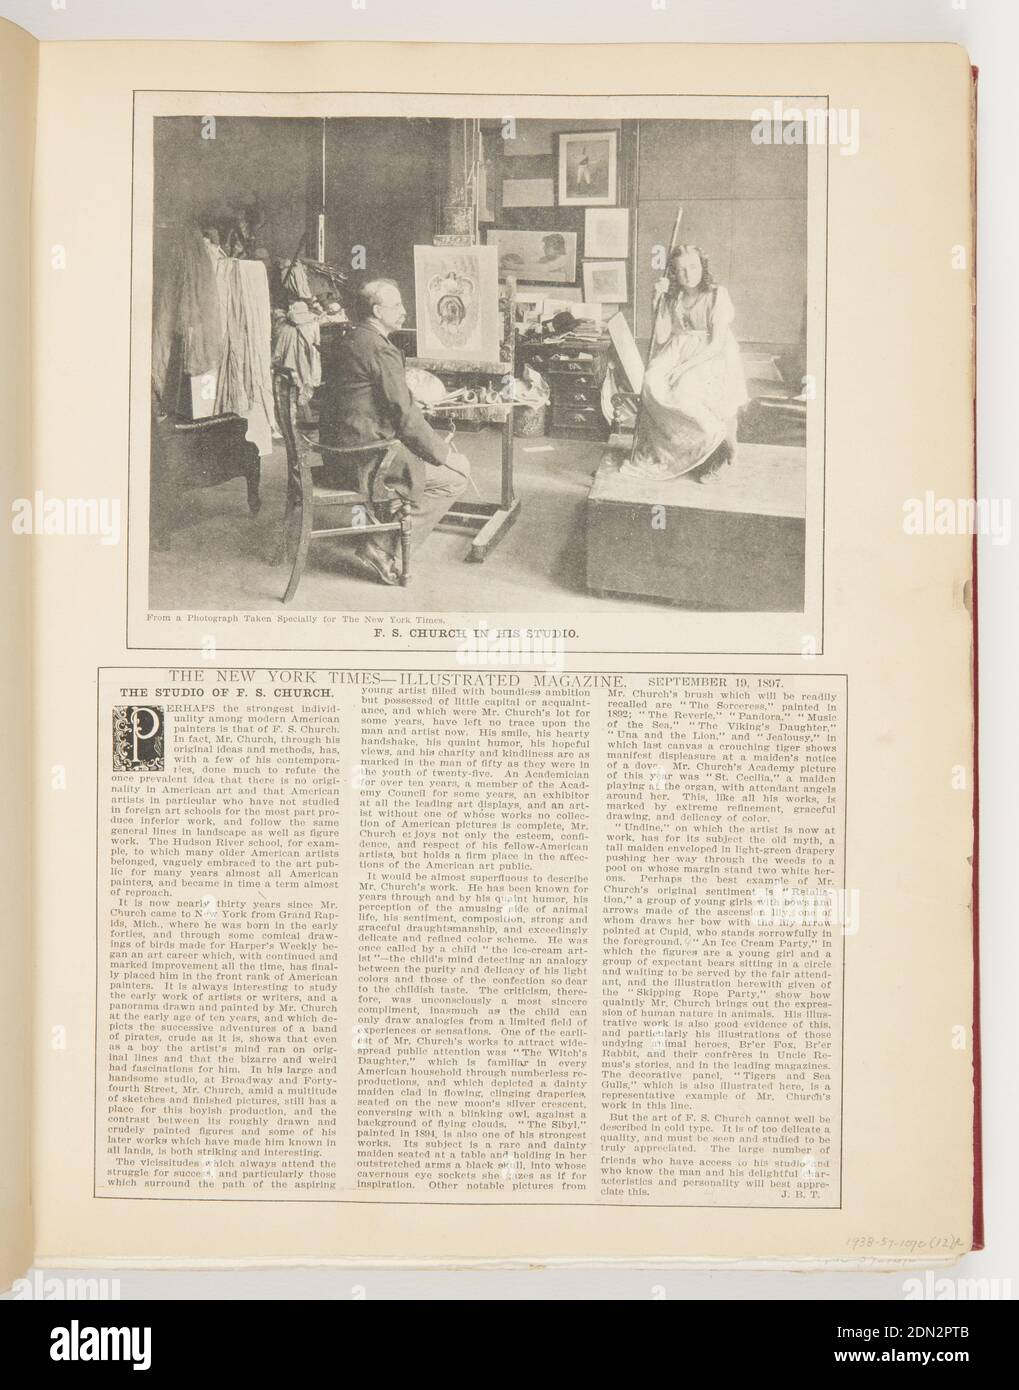 Das Studio von F.S. Kirche, gedruckt in schwarzer Tinte auf Papier, Artikel Ausschnitte aus der New York Times, USA, 1897, Ephemera, Ephemera, Ephemera Stockfoto